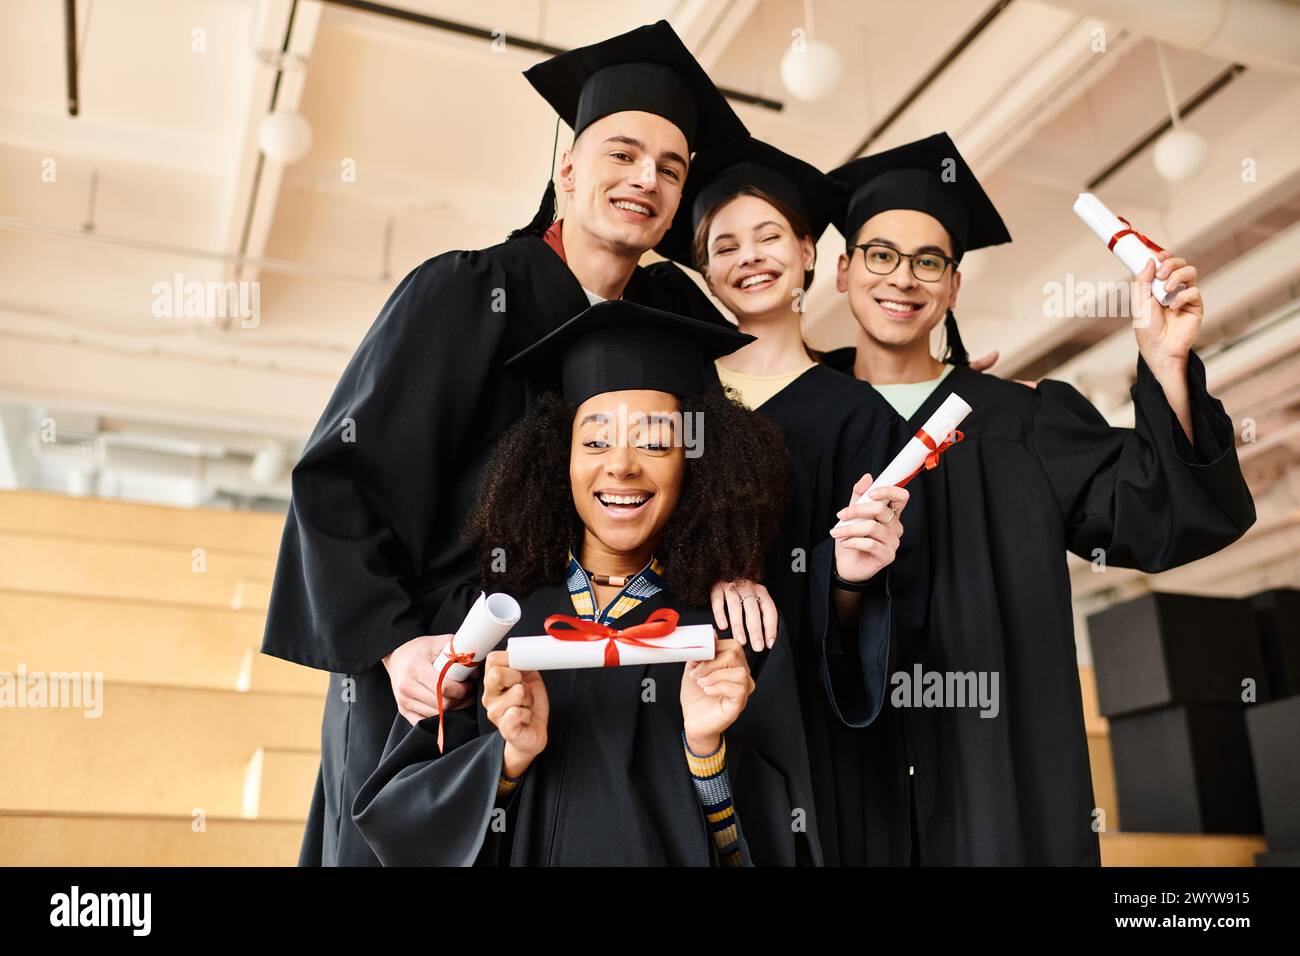 Verschiedene Gruppen von Studenten in Abschlusskleidern und akademischen Mützen lächeln glücklich für ein Foto drinnen. Stockfoto